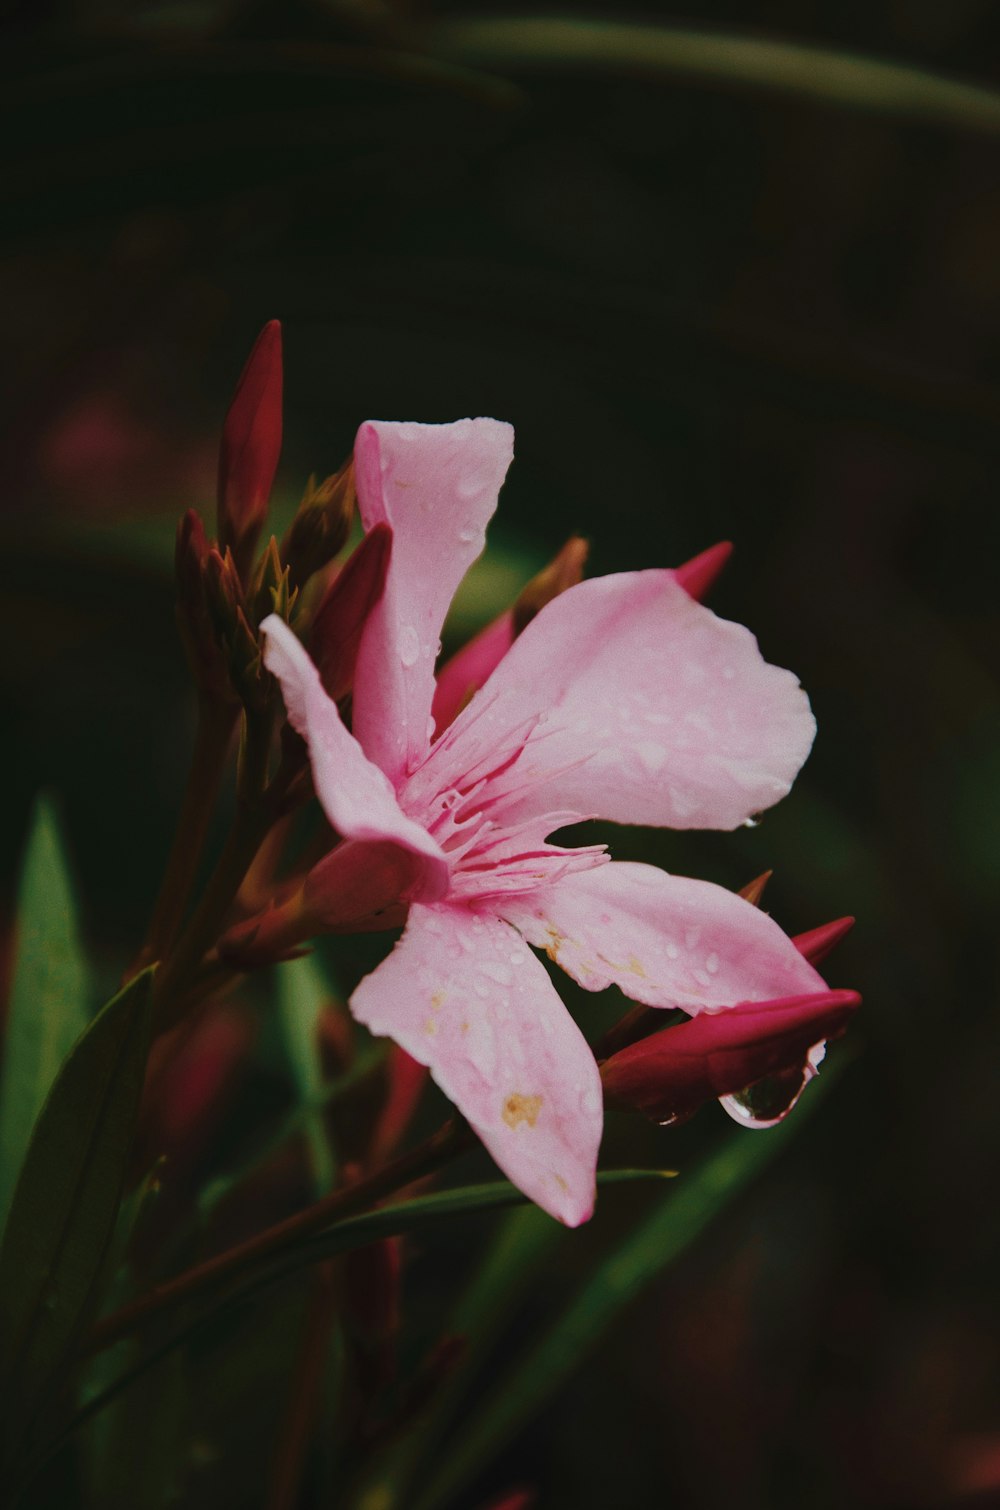 pink flower in bloom